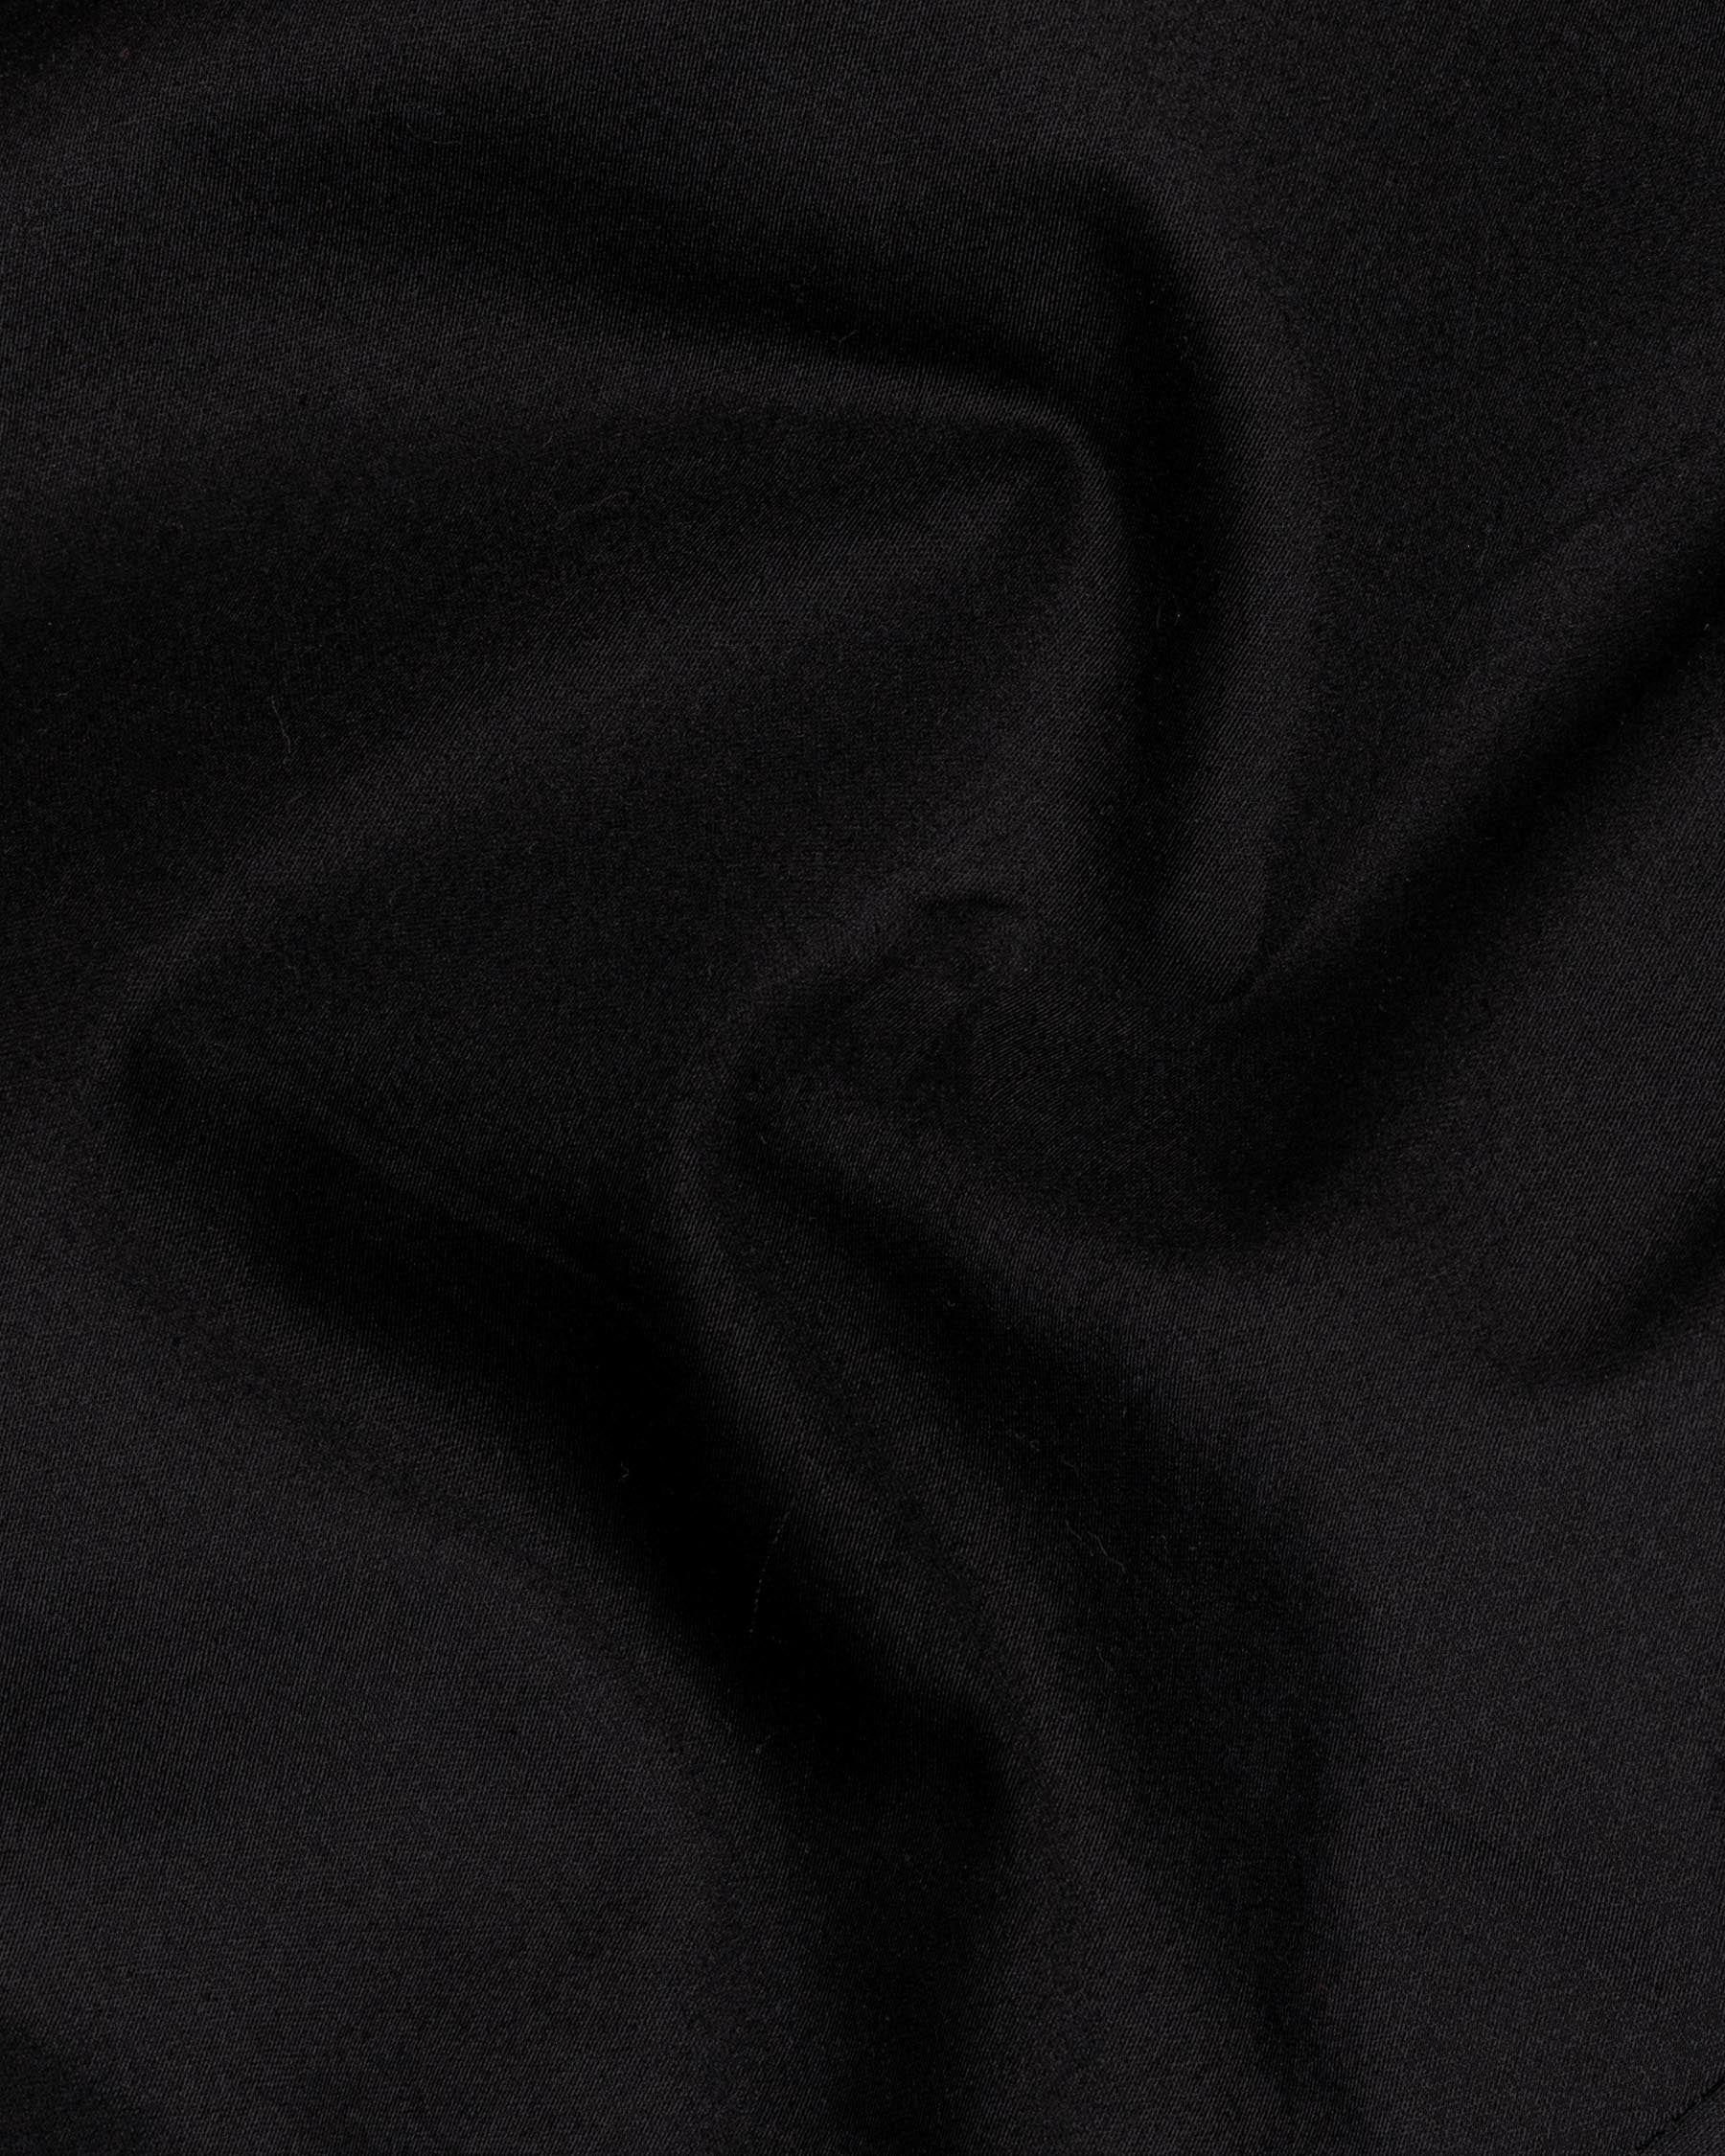 Jade Black Super Soft Premium Cotton Designer Lounge Pant LP165-28, LP165-30, LP165-32, LP165-34, LP165-36, LP165-38, LP165-40, LP165-42, LP165-44